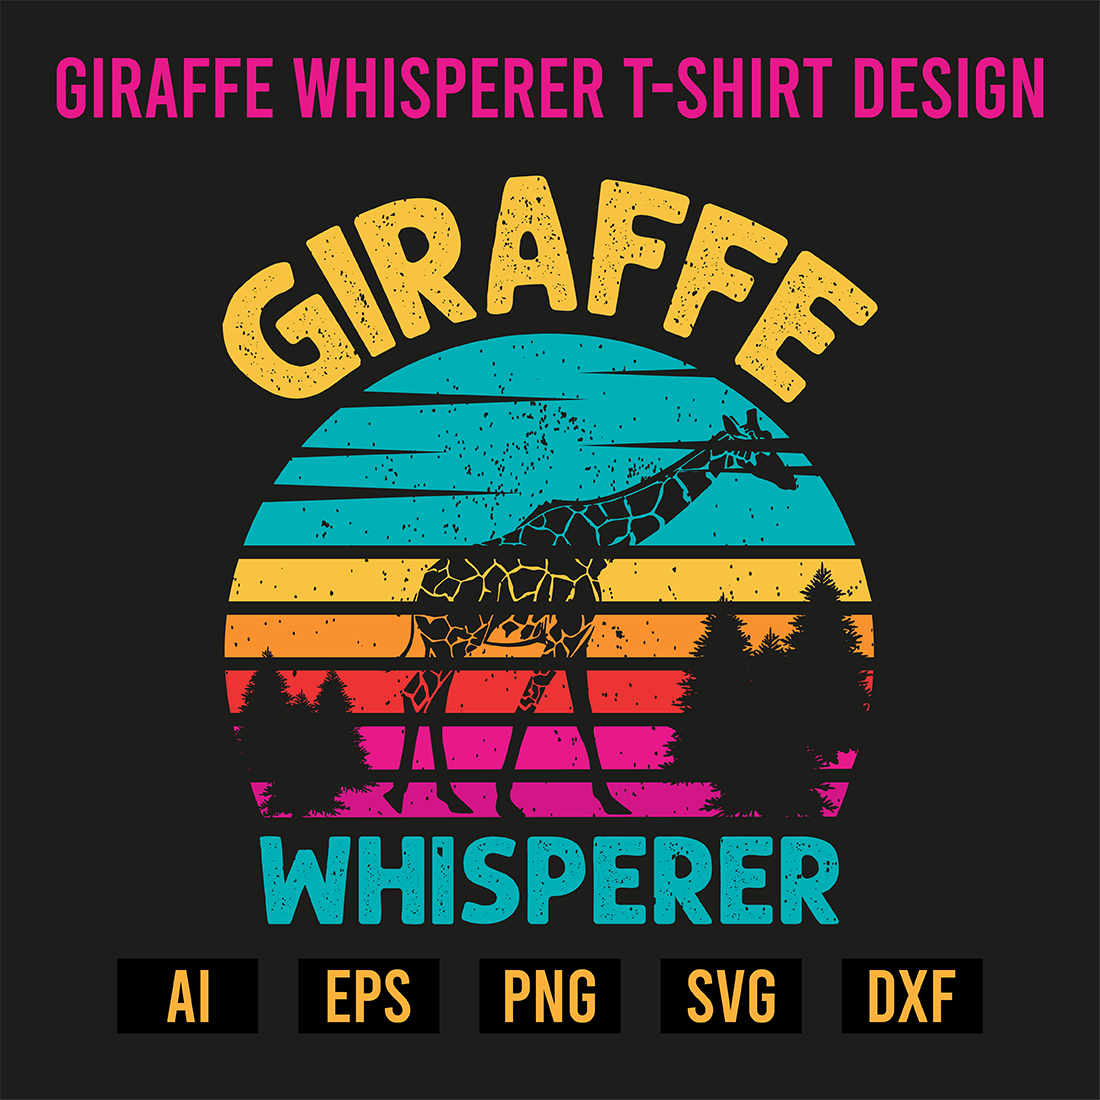 Giraffe Whisperer T-Shirt Design preview image.